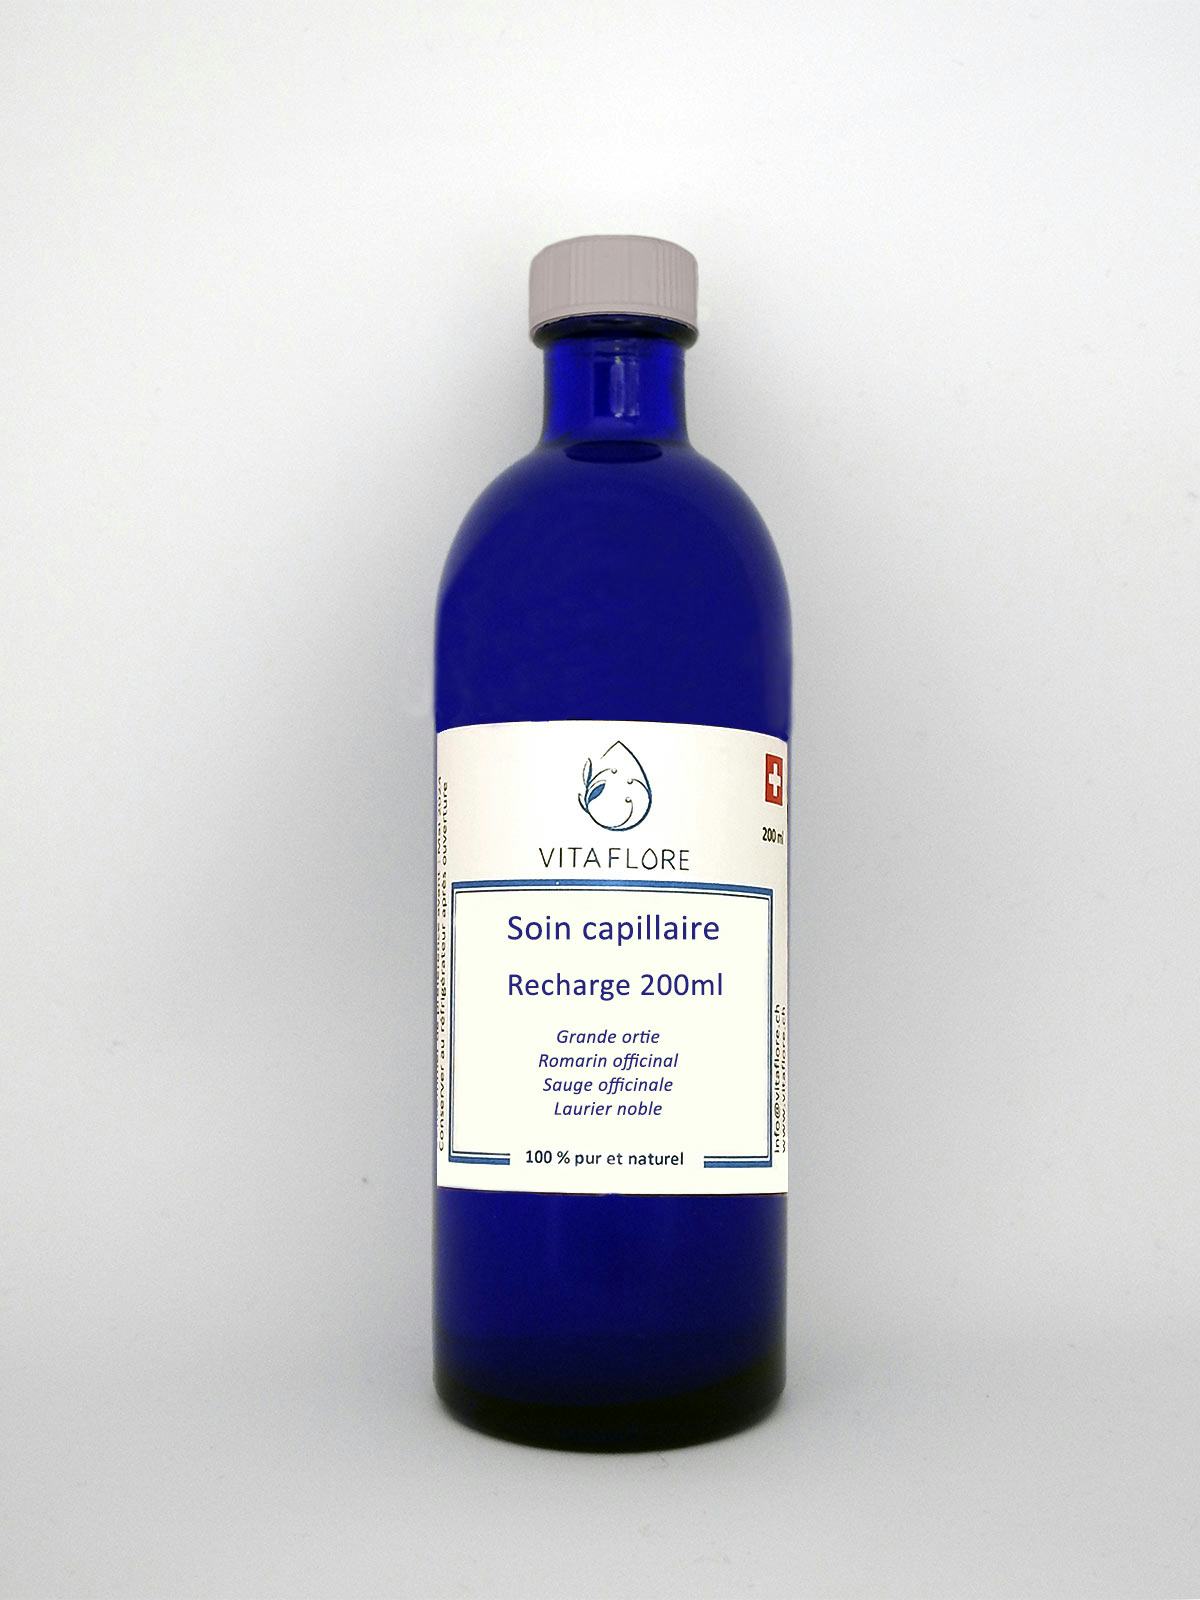 Synergie von Hydrolaten – Haarpflege – 200 ml Nachfüllung, Vitaflore, Grimisuat, image 1 | Mimelis